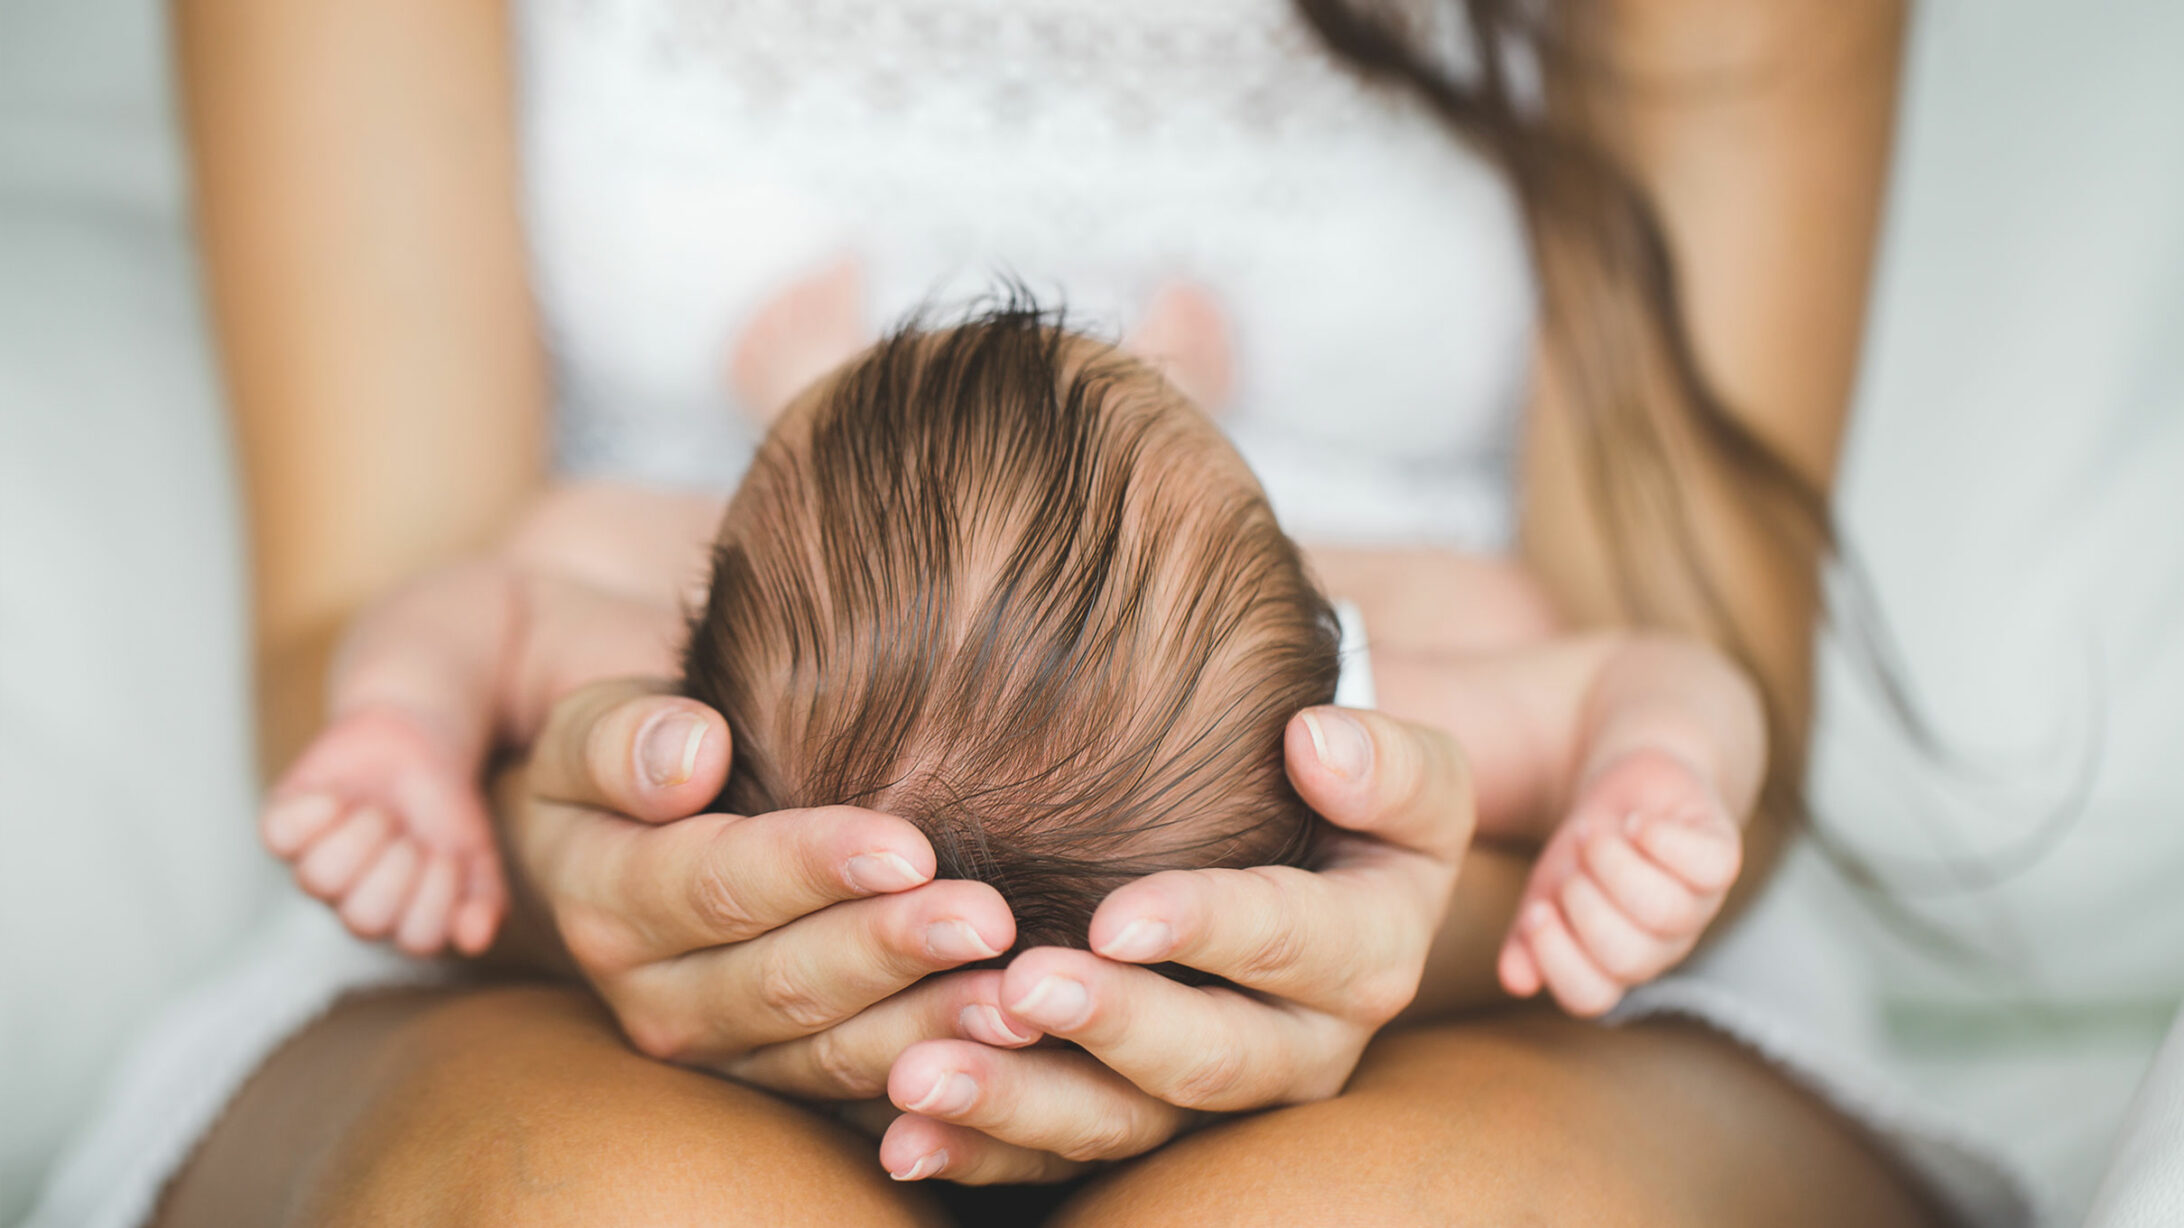 Eine Frau hält den Kopf eines Neugeborenen